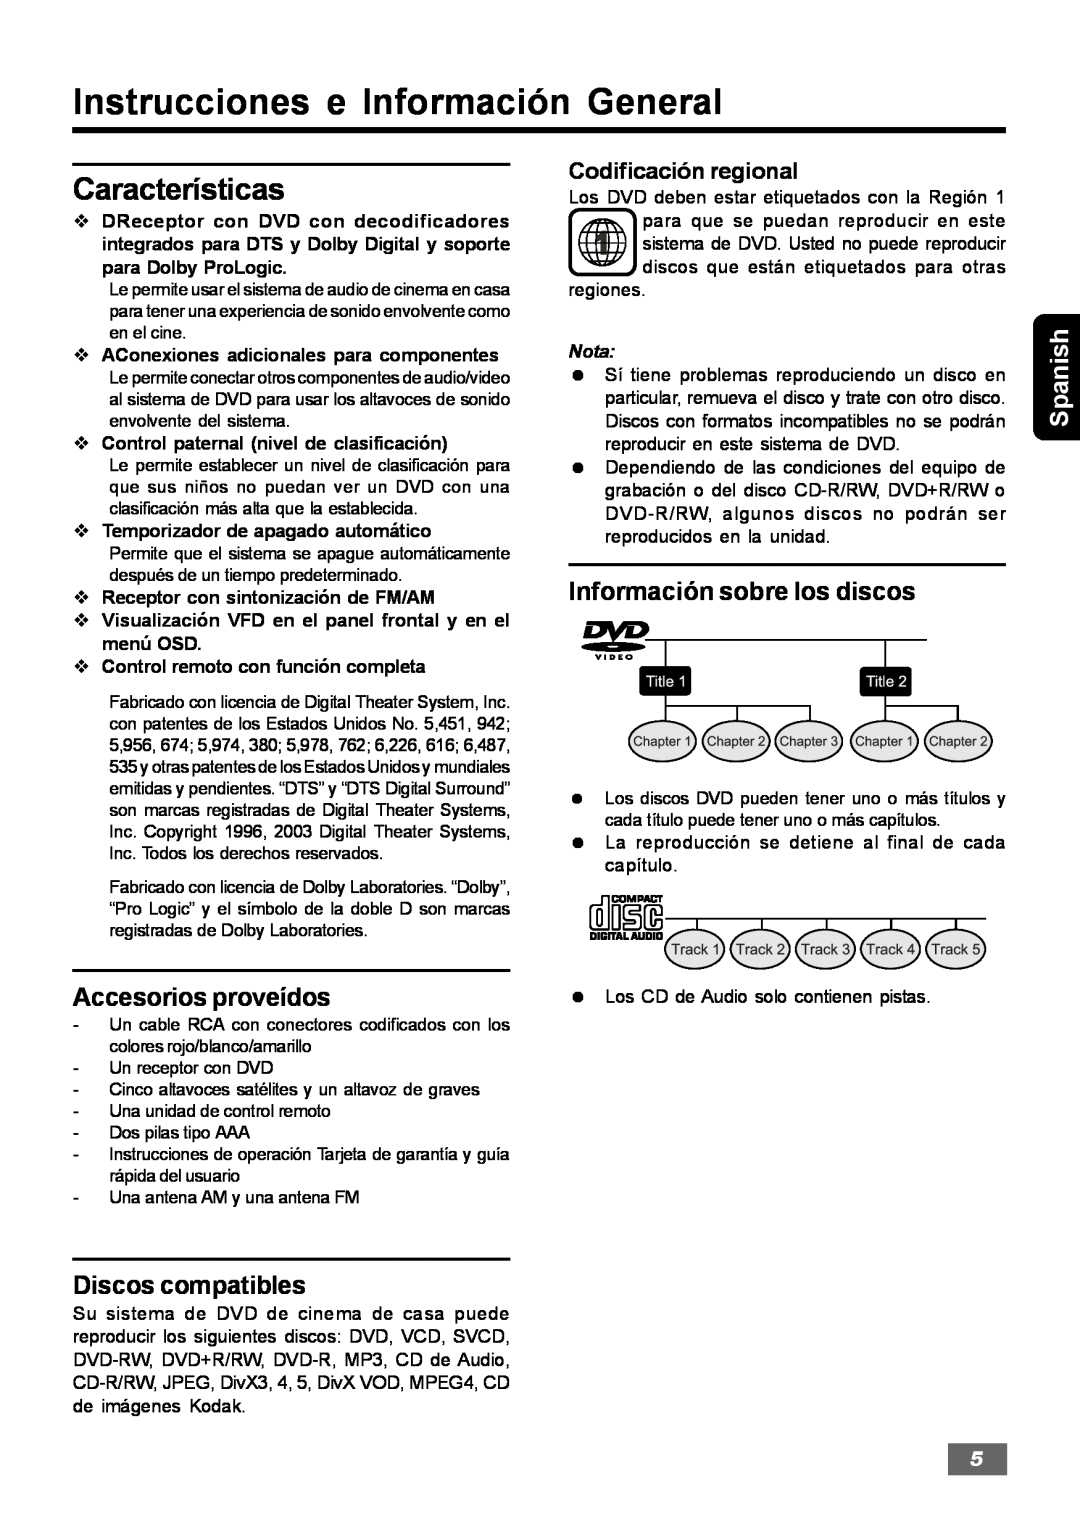 Insignia IS-HTIB102731 Instrucciones e Información General, Características, Información sobre los discos, Spanish 